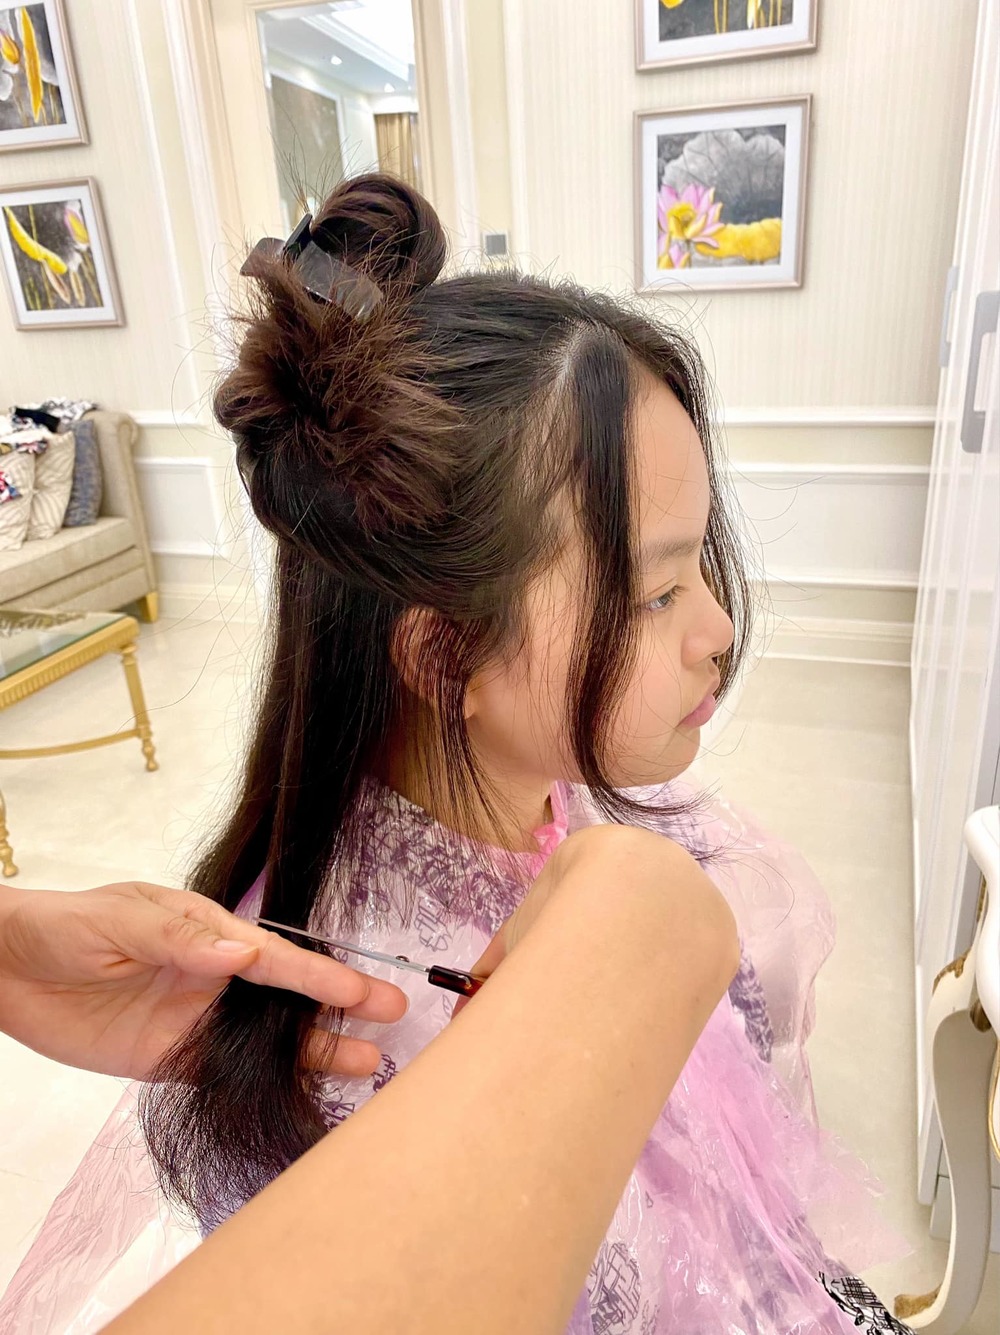 Siêu mẫu Thúy Hạnh cắt tóc cho con gái, kết quả như bước ra từ salon 'xịn' - Ảnh 2